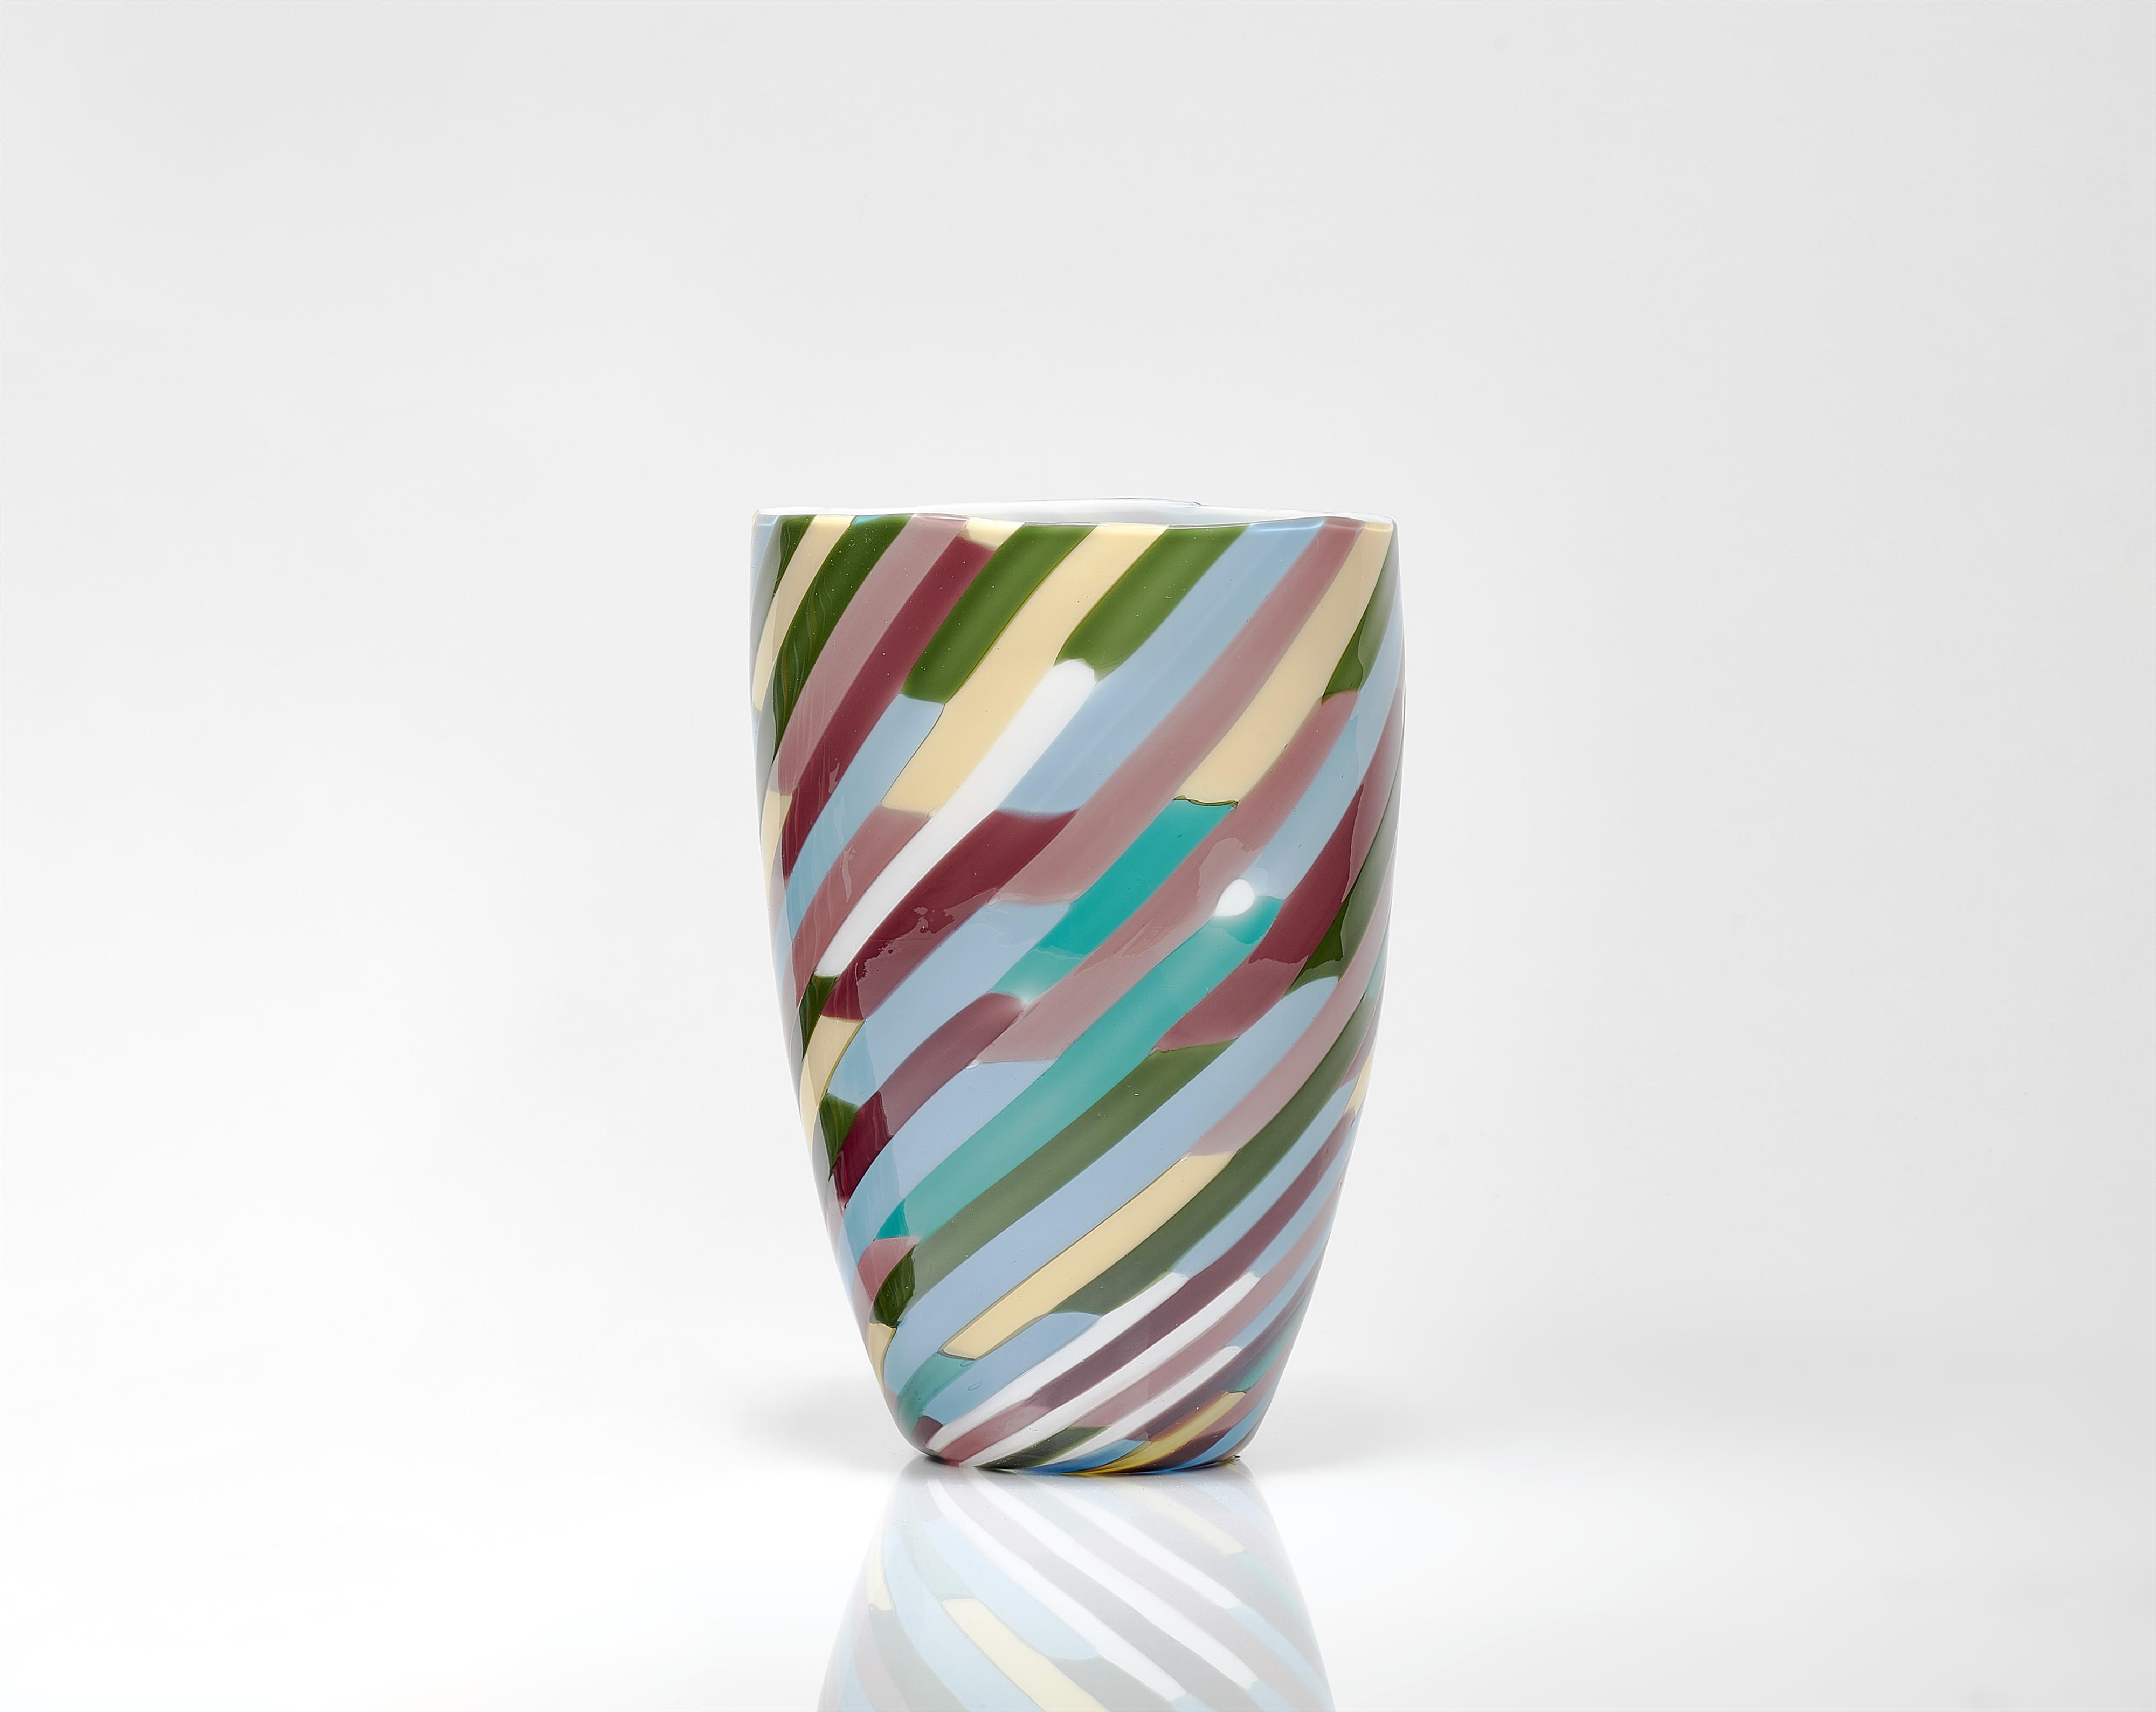 A 'Klee' vase
Venini & C., Murano, designed by Laura Diaz de Santillana, produced in 1981. - image-1